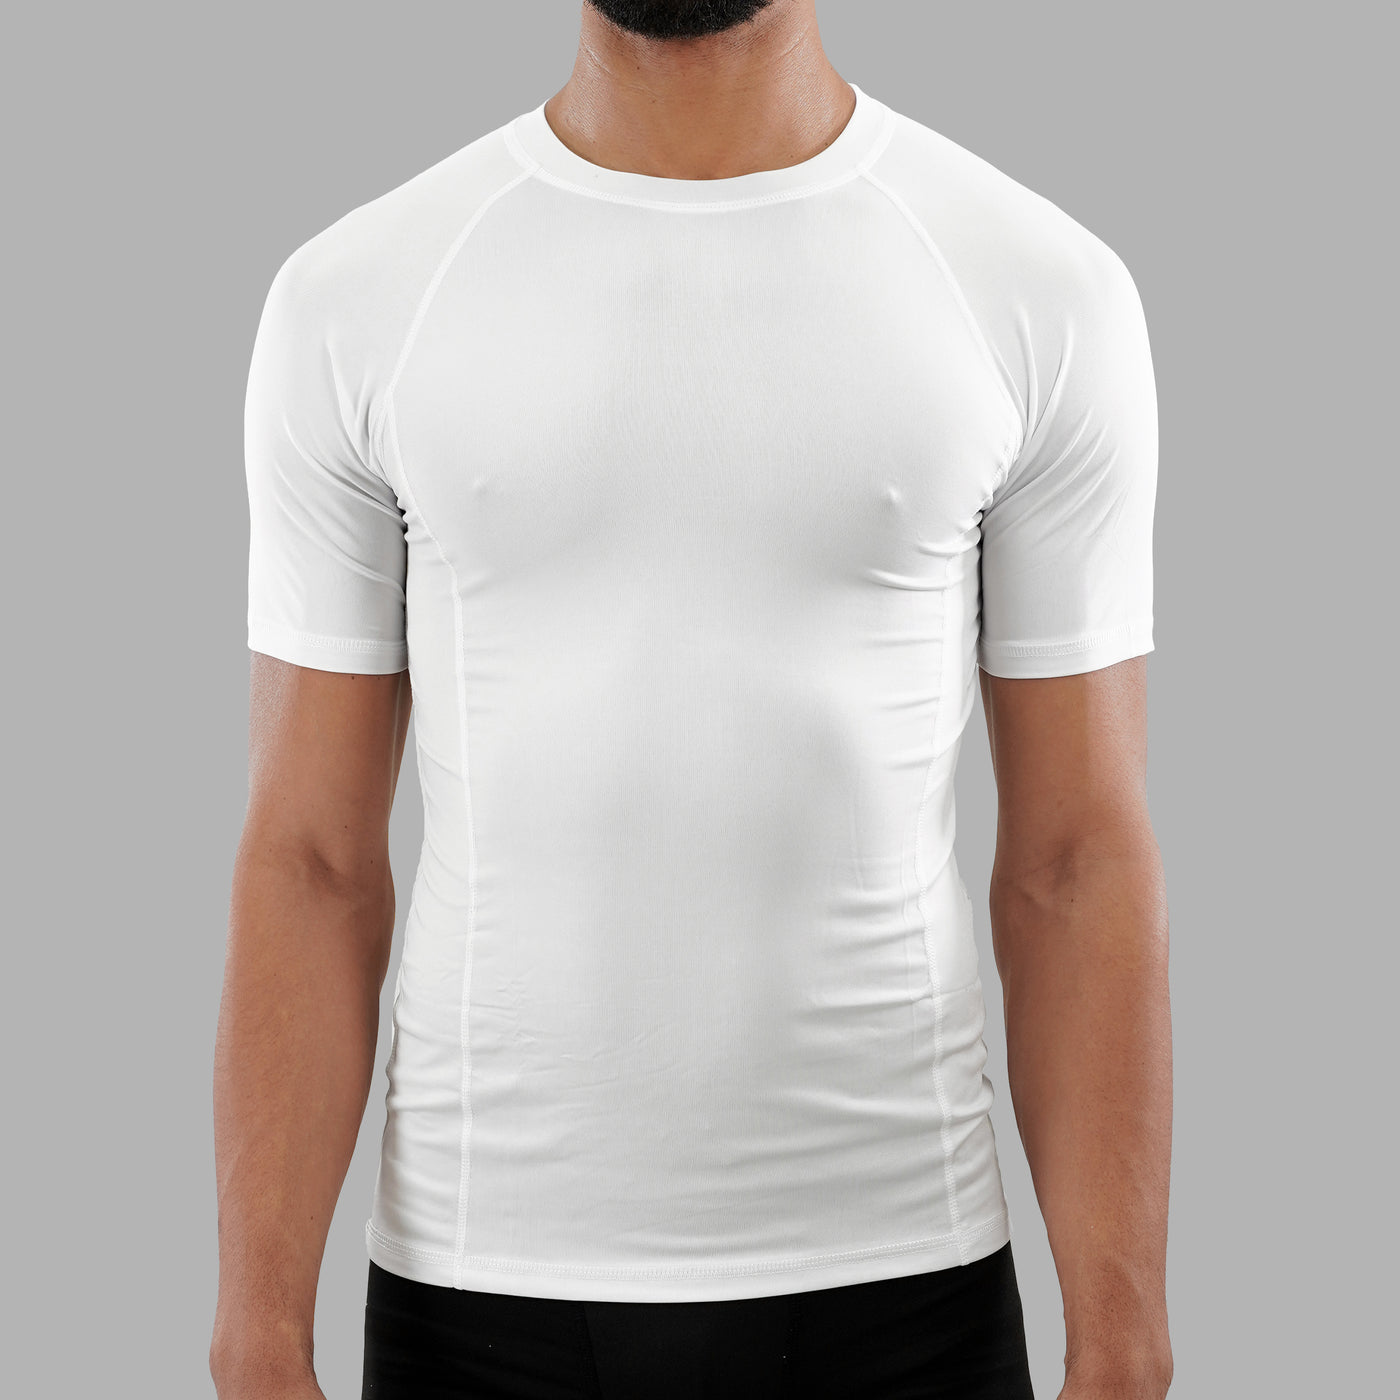 Basic White Compression Shirt